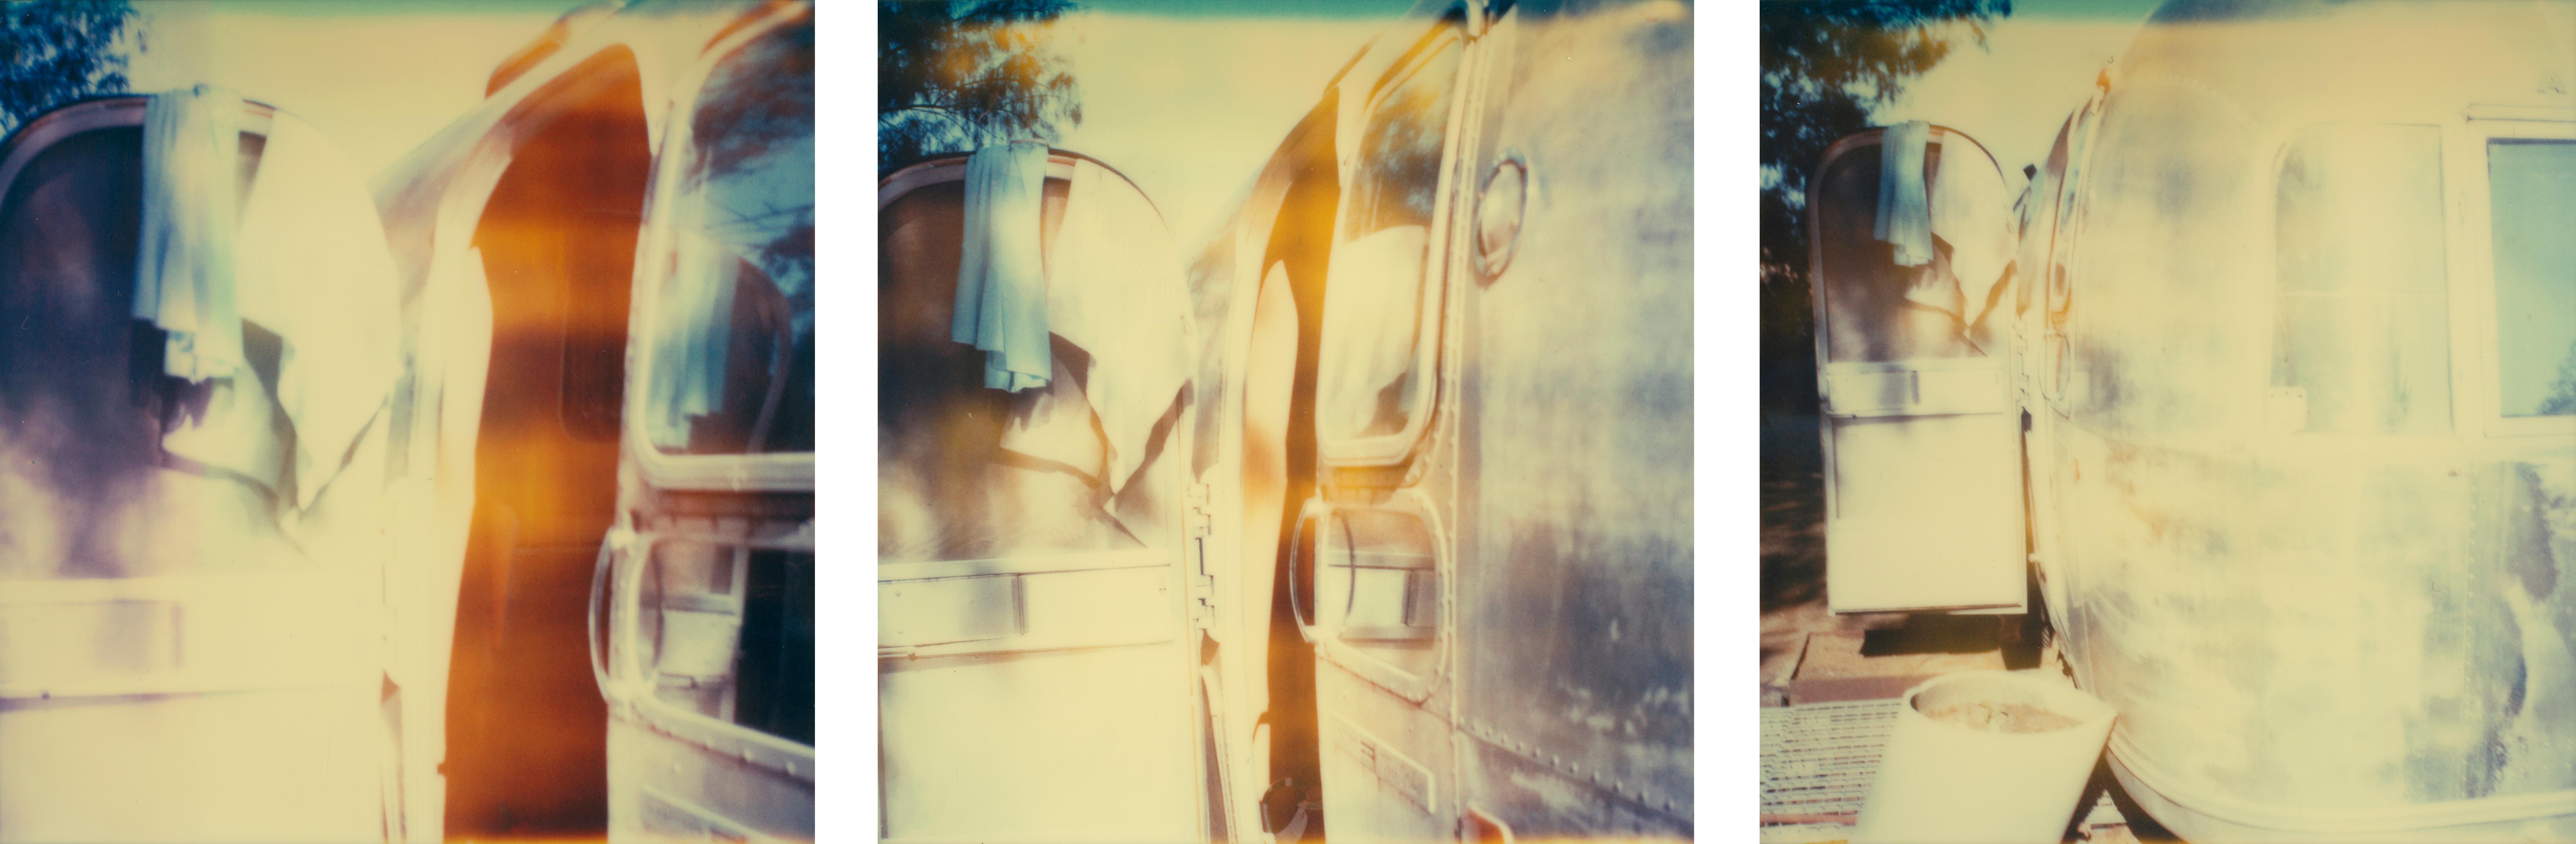 Stefanie Schneider Landscape Photograph - Blue Dress - Sidewinder, analog, triptych